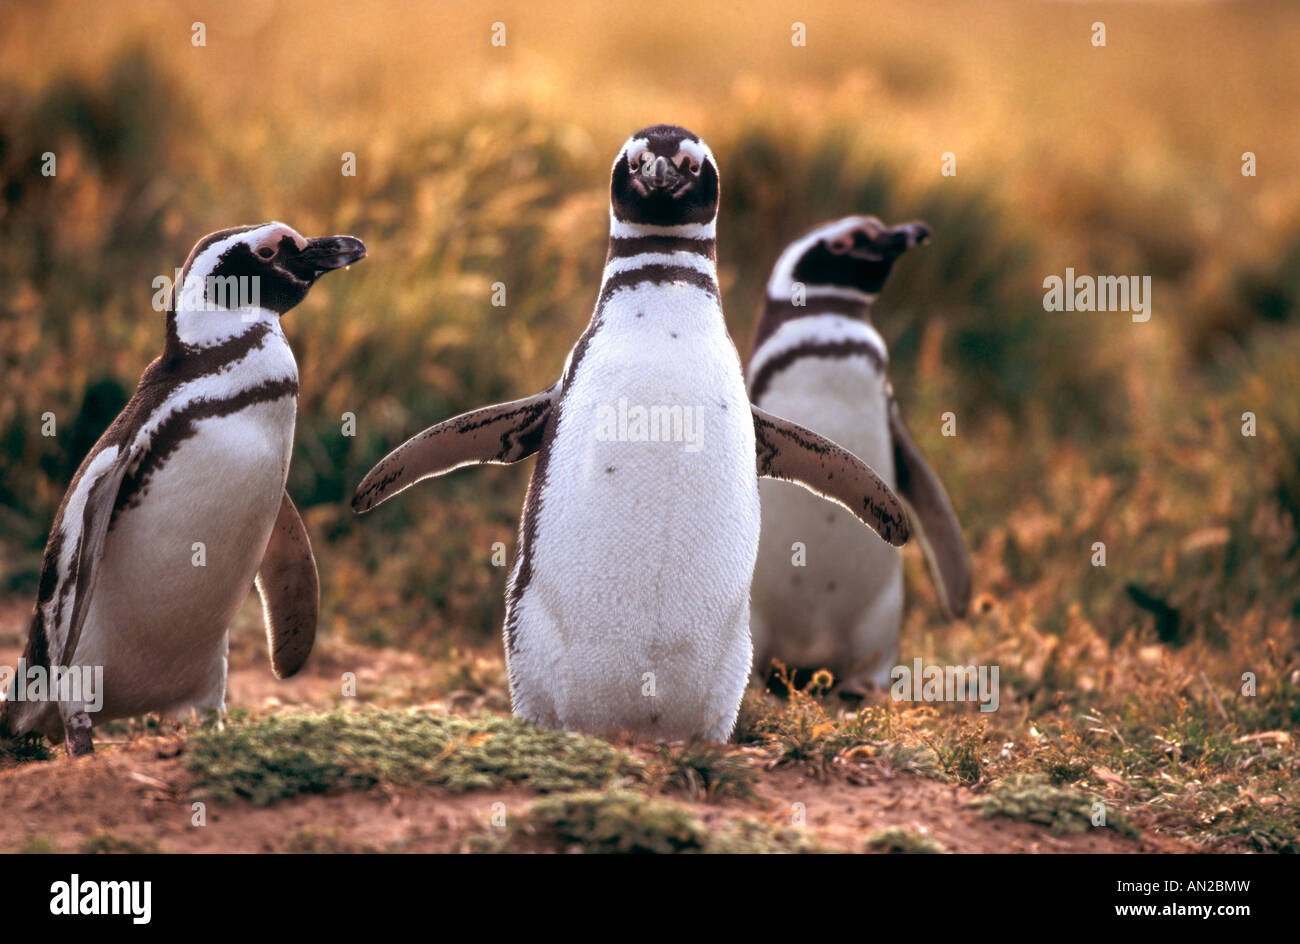 Pinguin Kolonie Magellanpinguine Seno Otway Patagonia Chile Spheniscus magellanicus Stock Photo